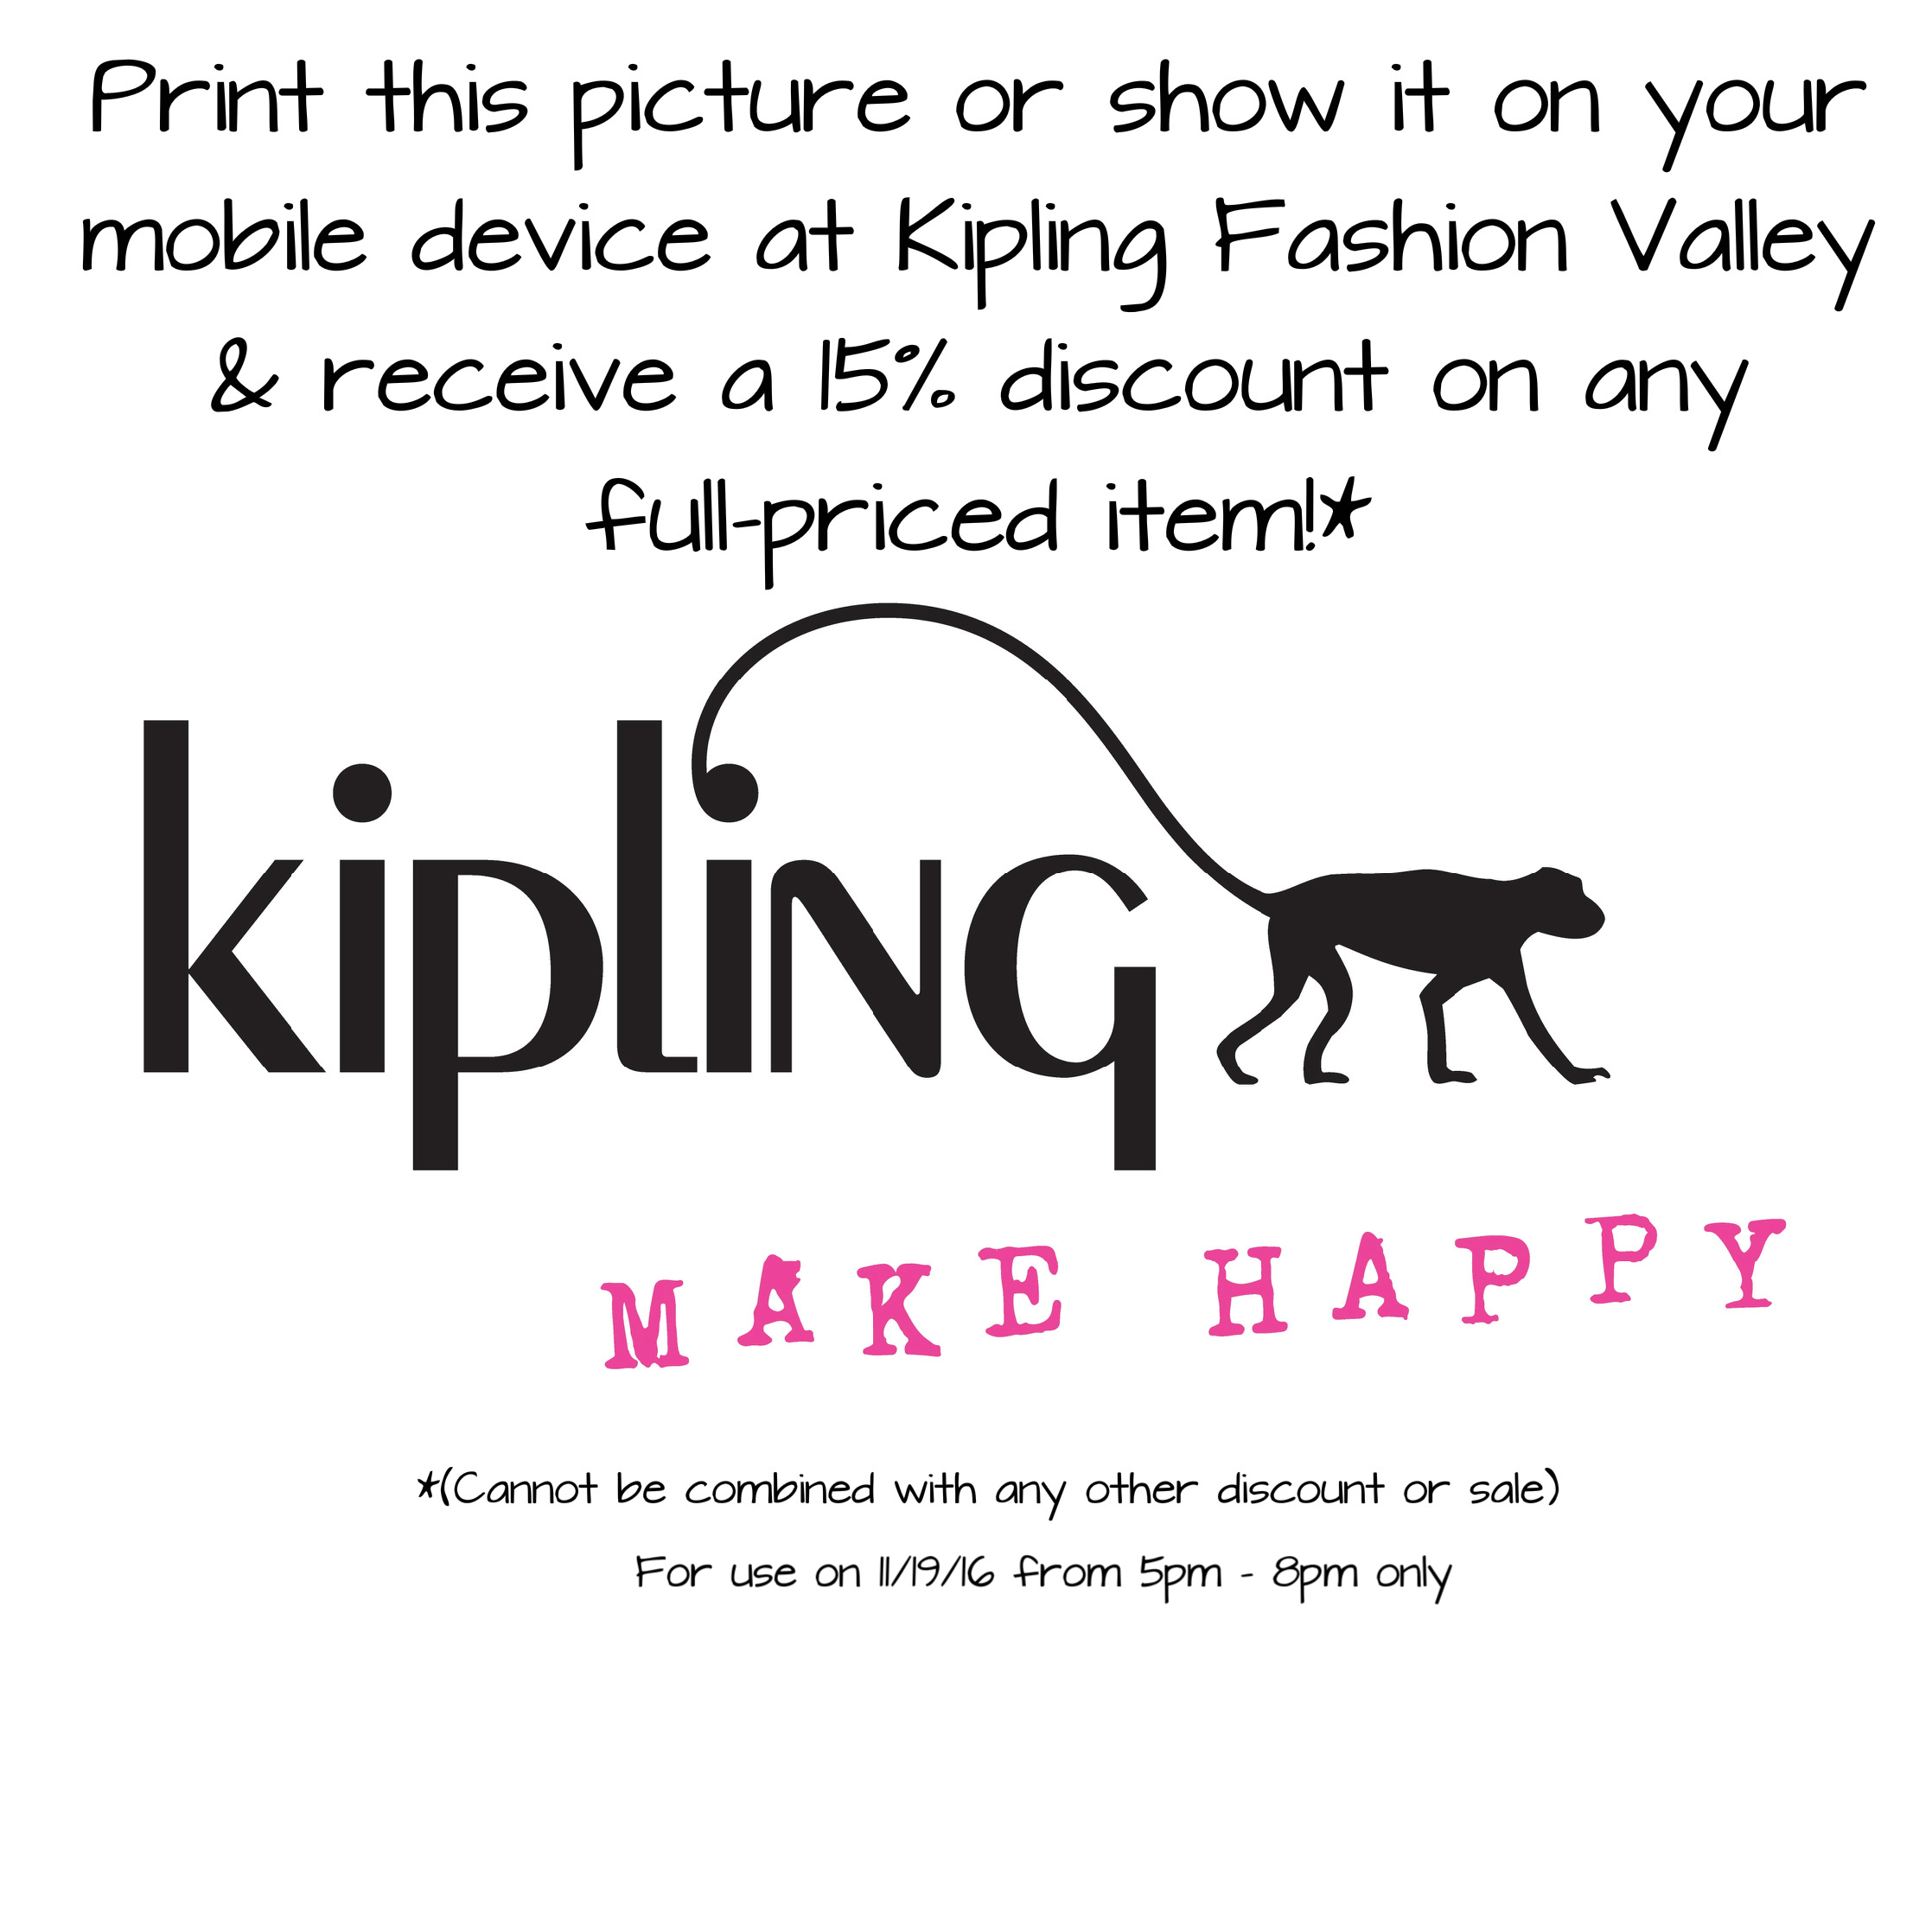 Kipling-Discount-11.19.16-update.jpg